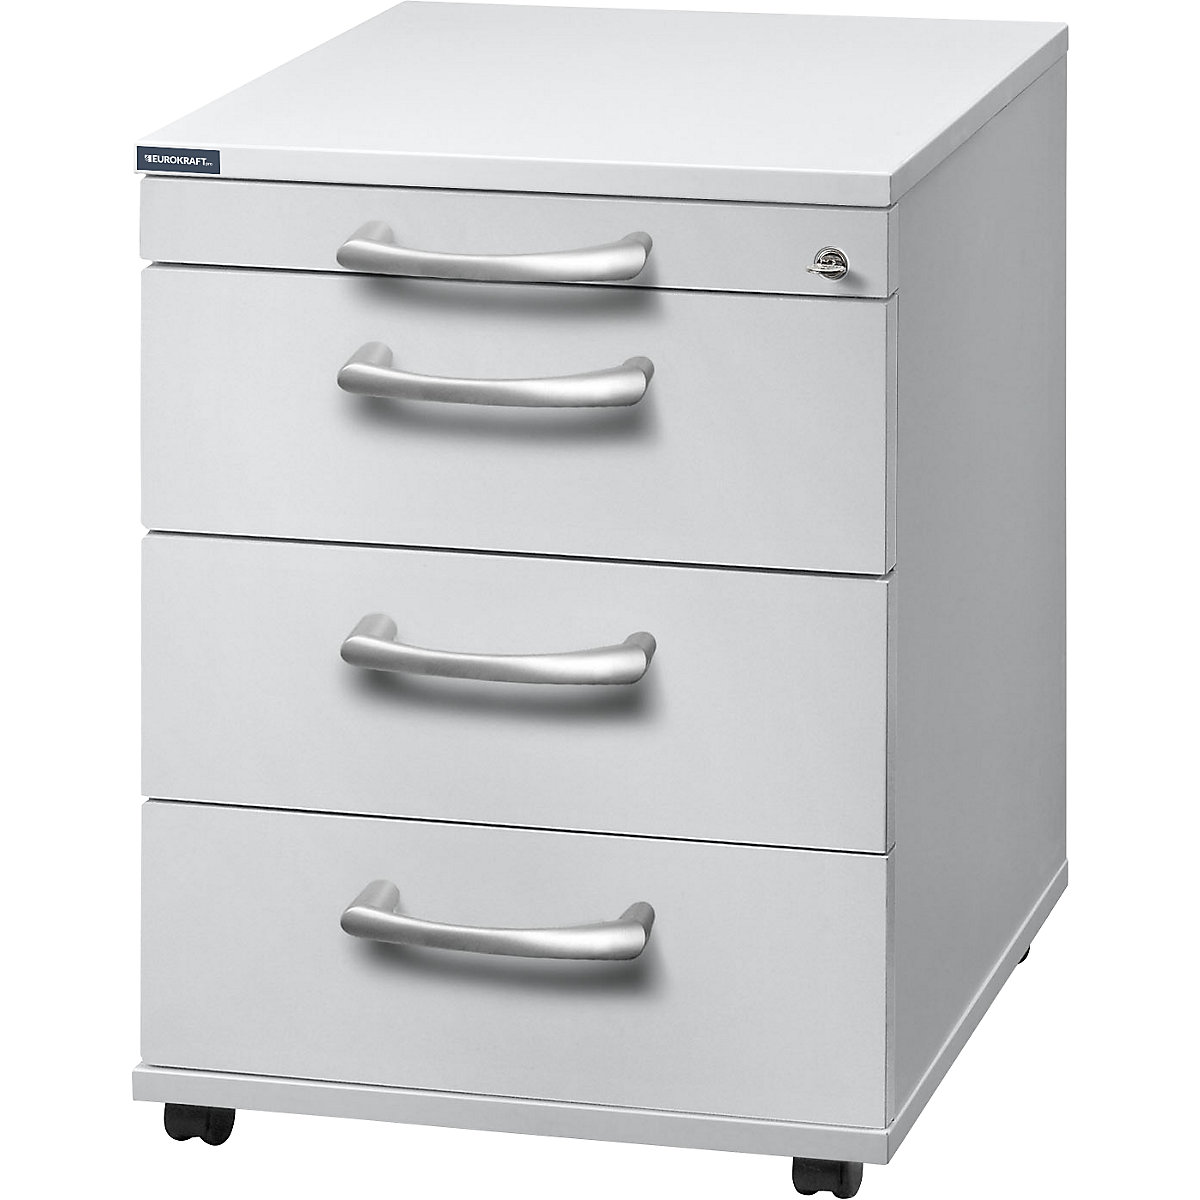 Mobile pedestal ANNY – eurokraft pro, 1 utensil drawer, 3 drawers, depth 580 mm, light grey-7